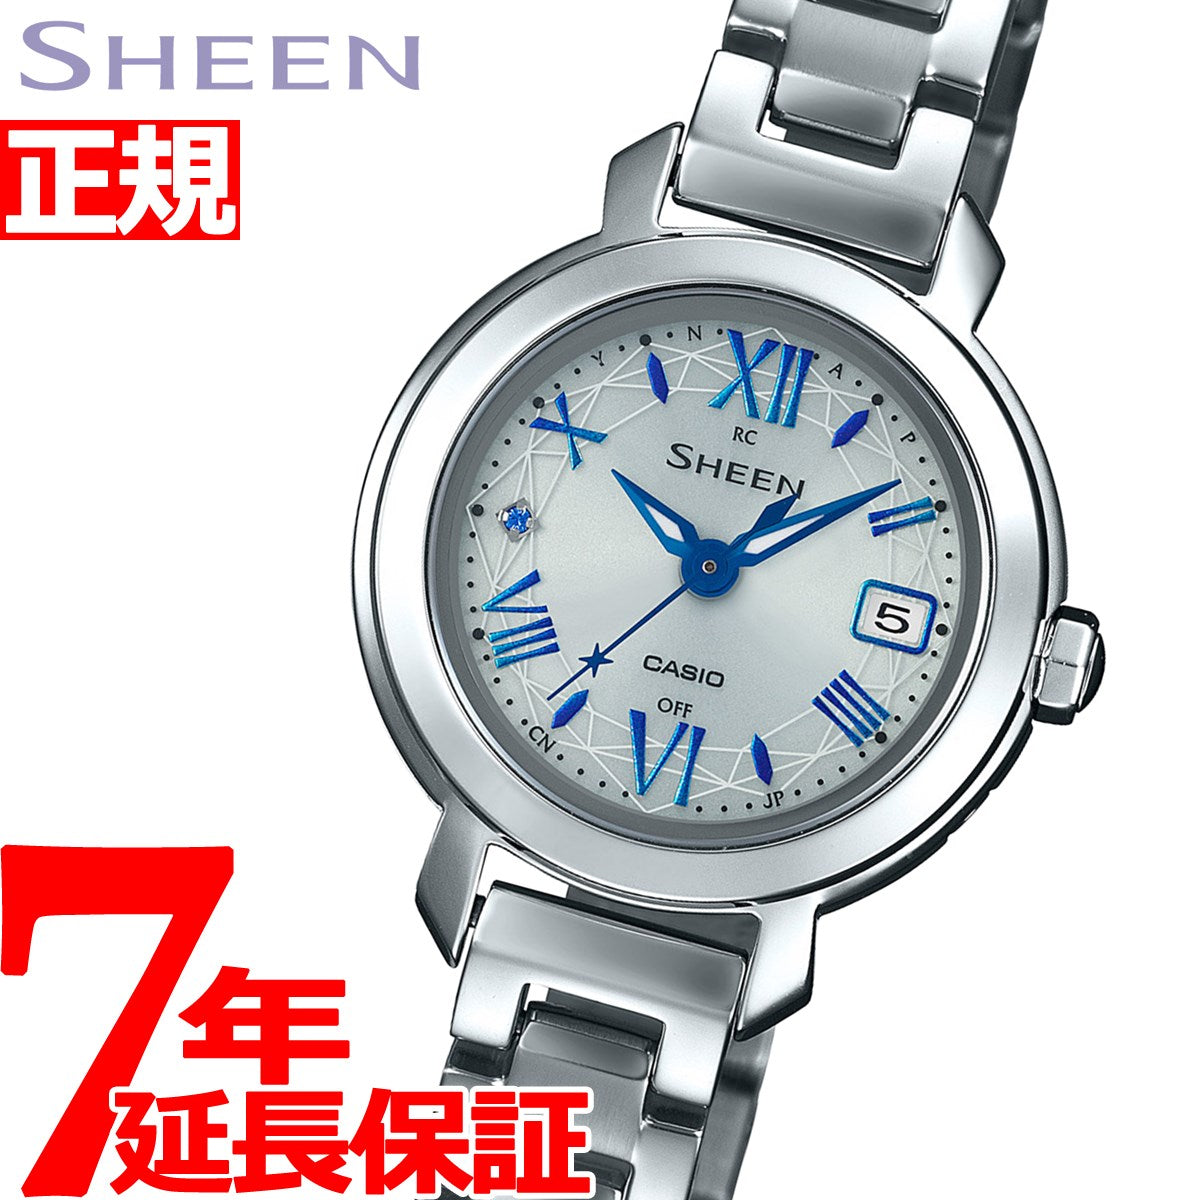 カシオ シーン CASIO SHEEN 電波 ソーラー 電波時計 腕時計 レディース